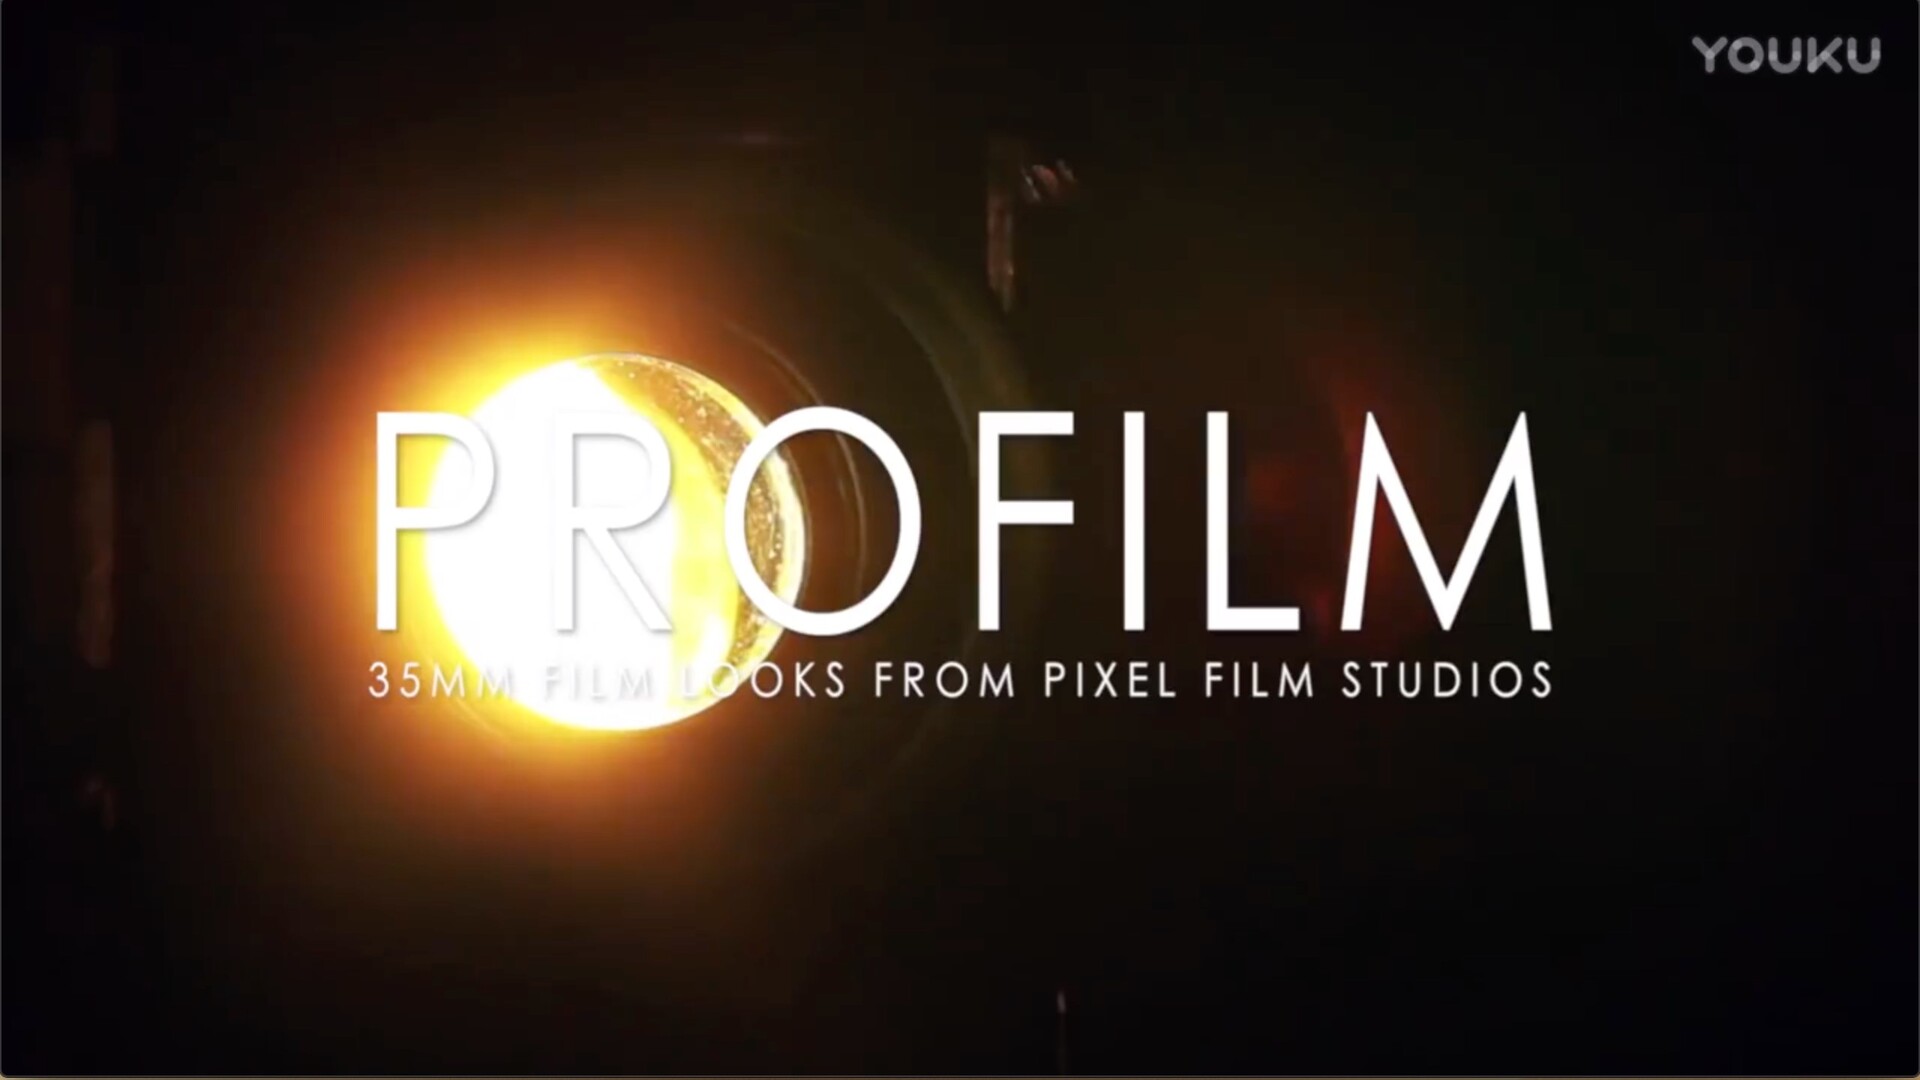 fcpx插件:PROFILM 模拟电影胶片效果